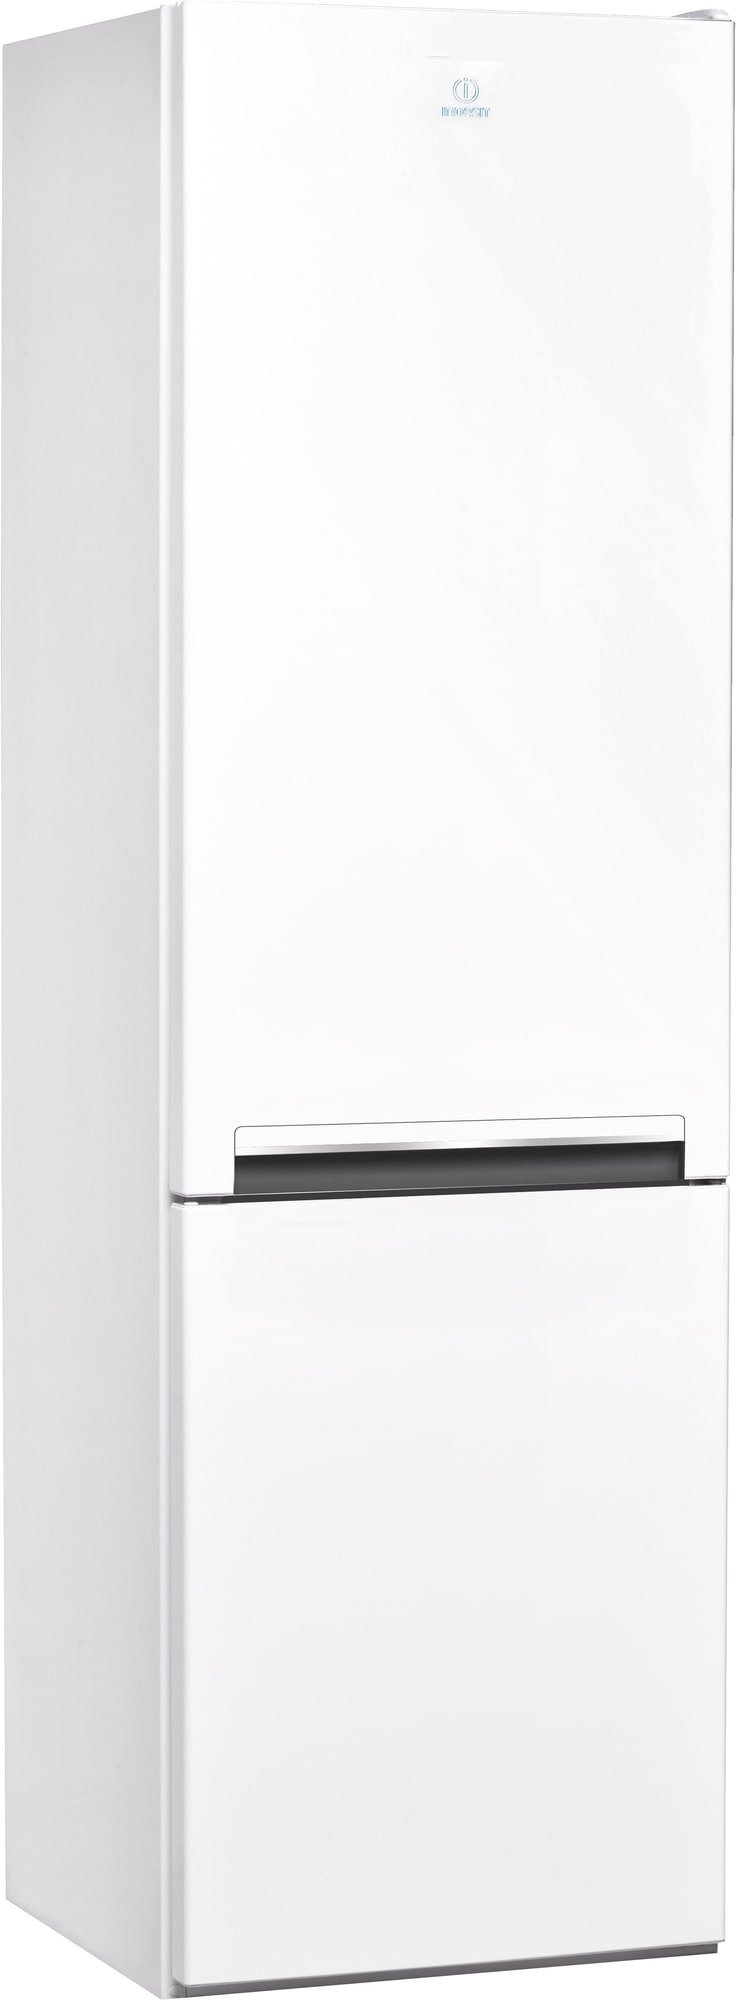 Indesit køleskab/fryser LI7S1EW (hvid)